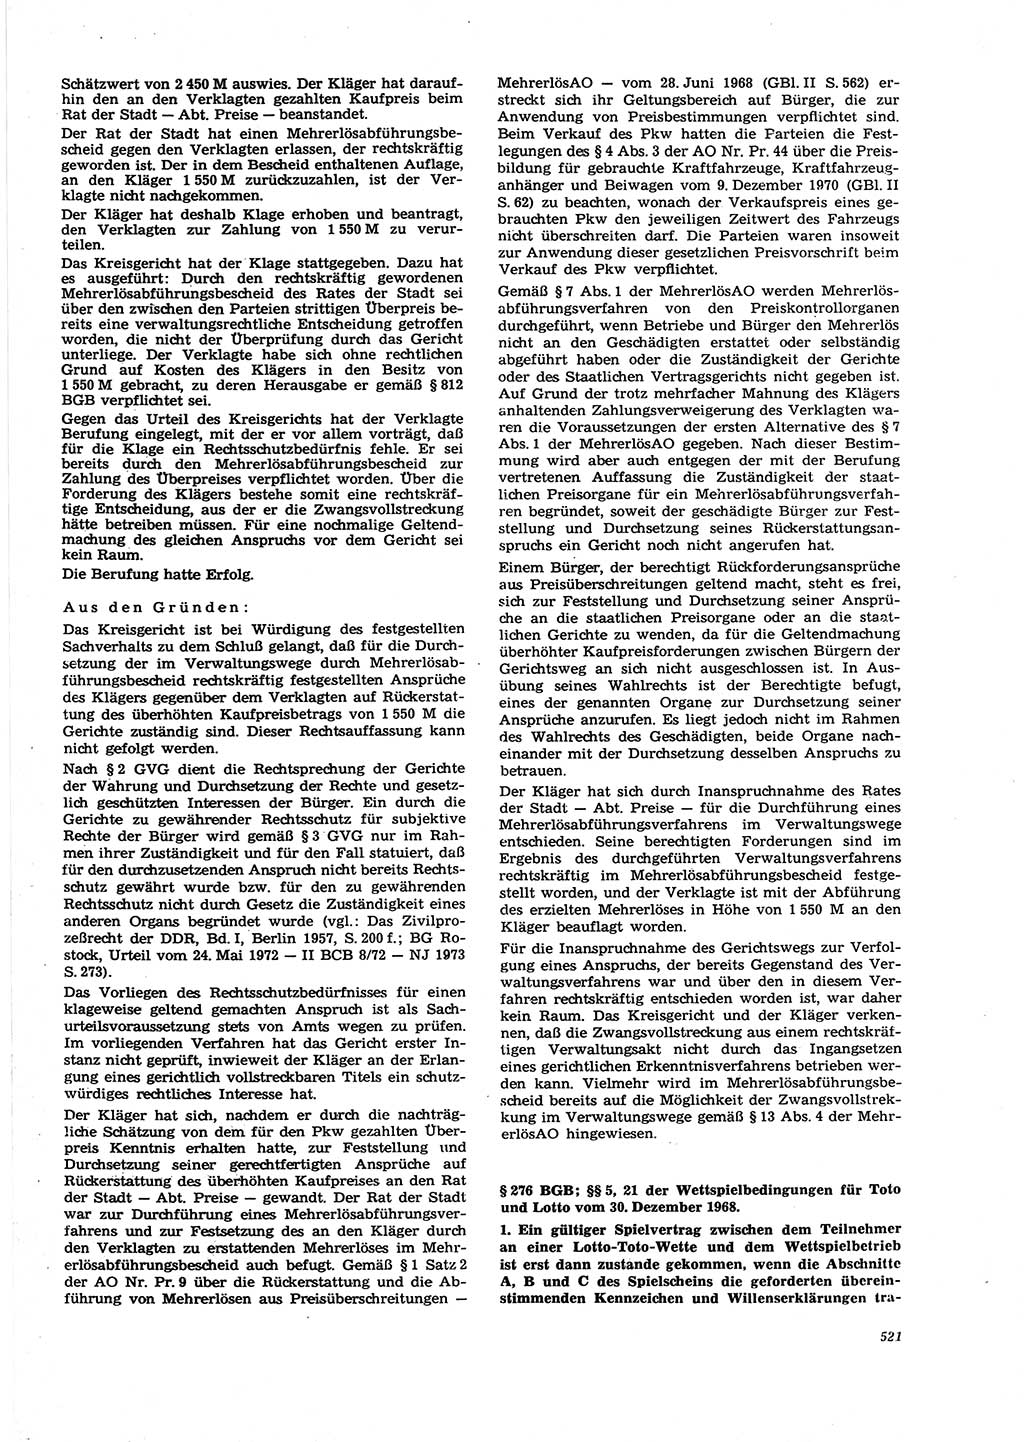 Neue Justiz (NJ), Zeitschrift für Recht und Rechtswissenschaft [Deutsche Demokratische Republik (DDR)], 27. Jahrgang 1973, Seite 521 (NJ DDR 1973, S. 521)